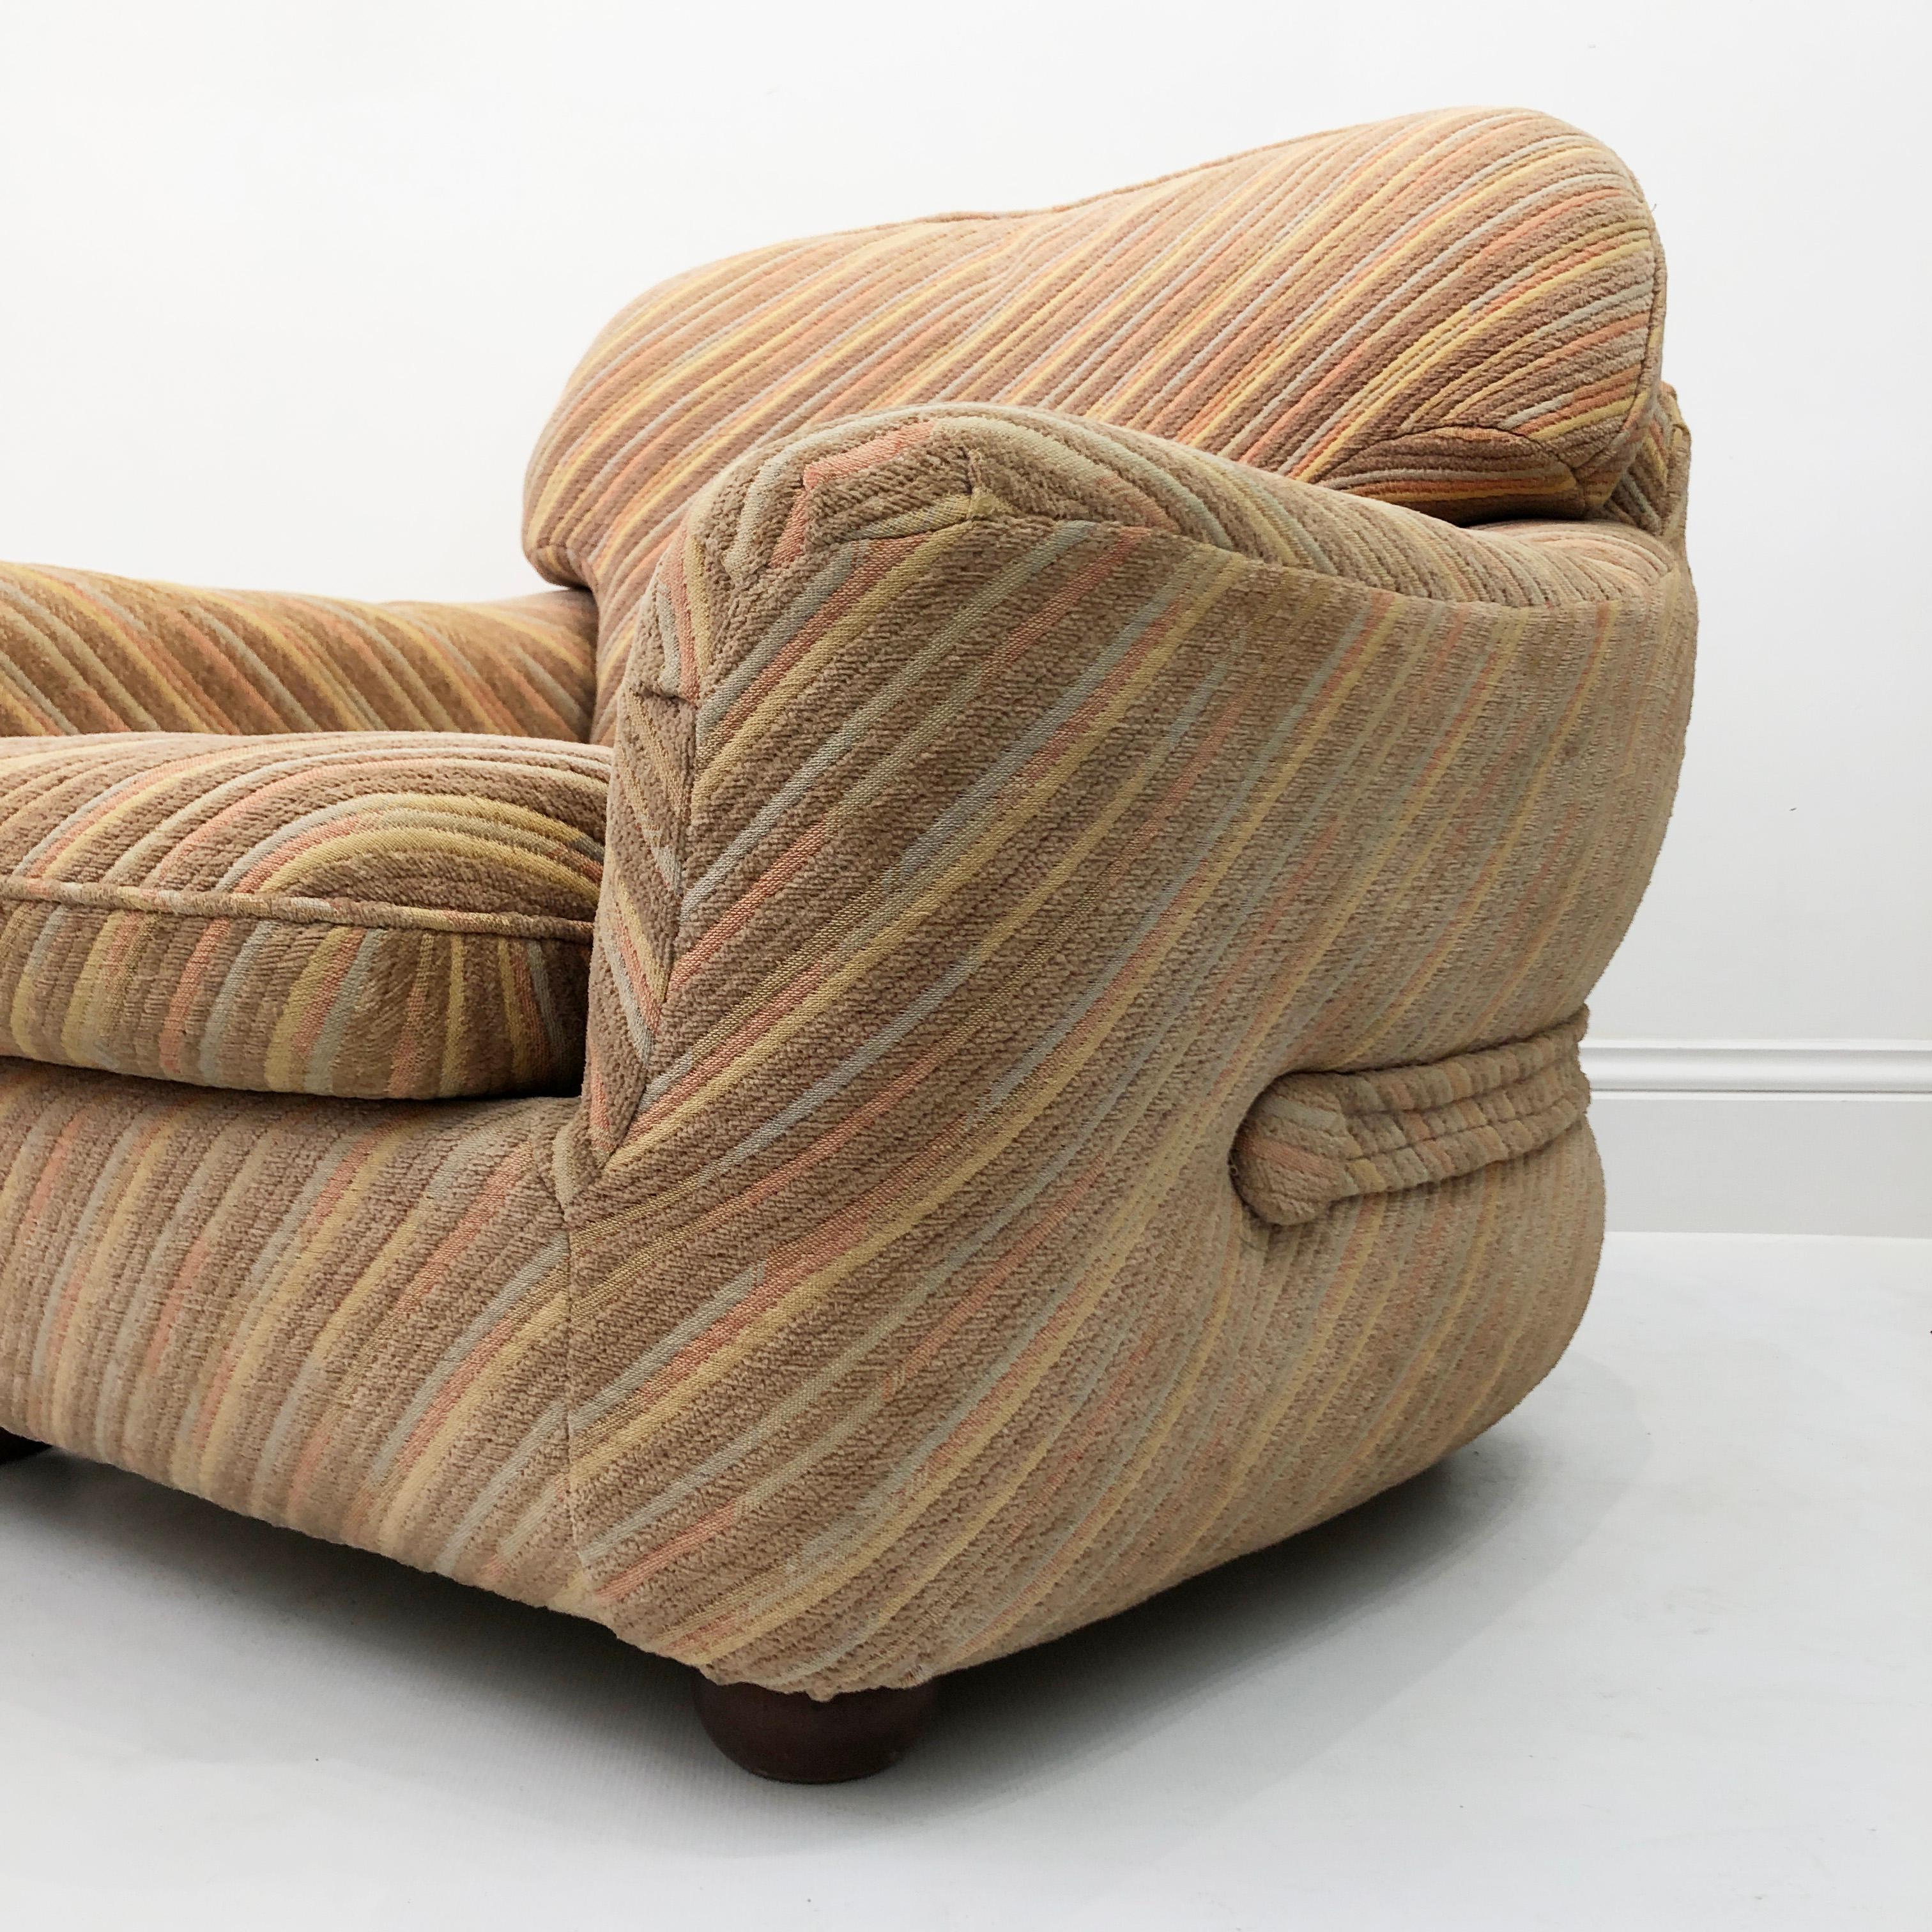 Zorzi Italian Pastel Lounge Armchair 1970s Adriano Piazzesi Scarpa Style For Sale 5